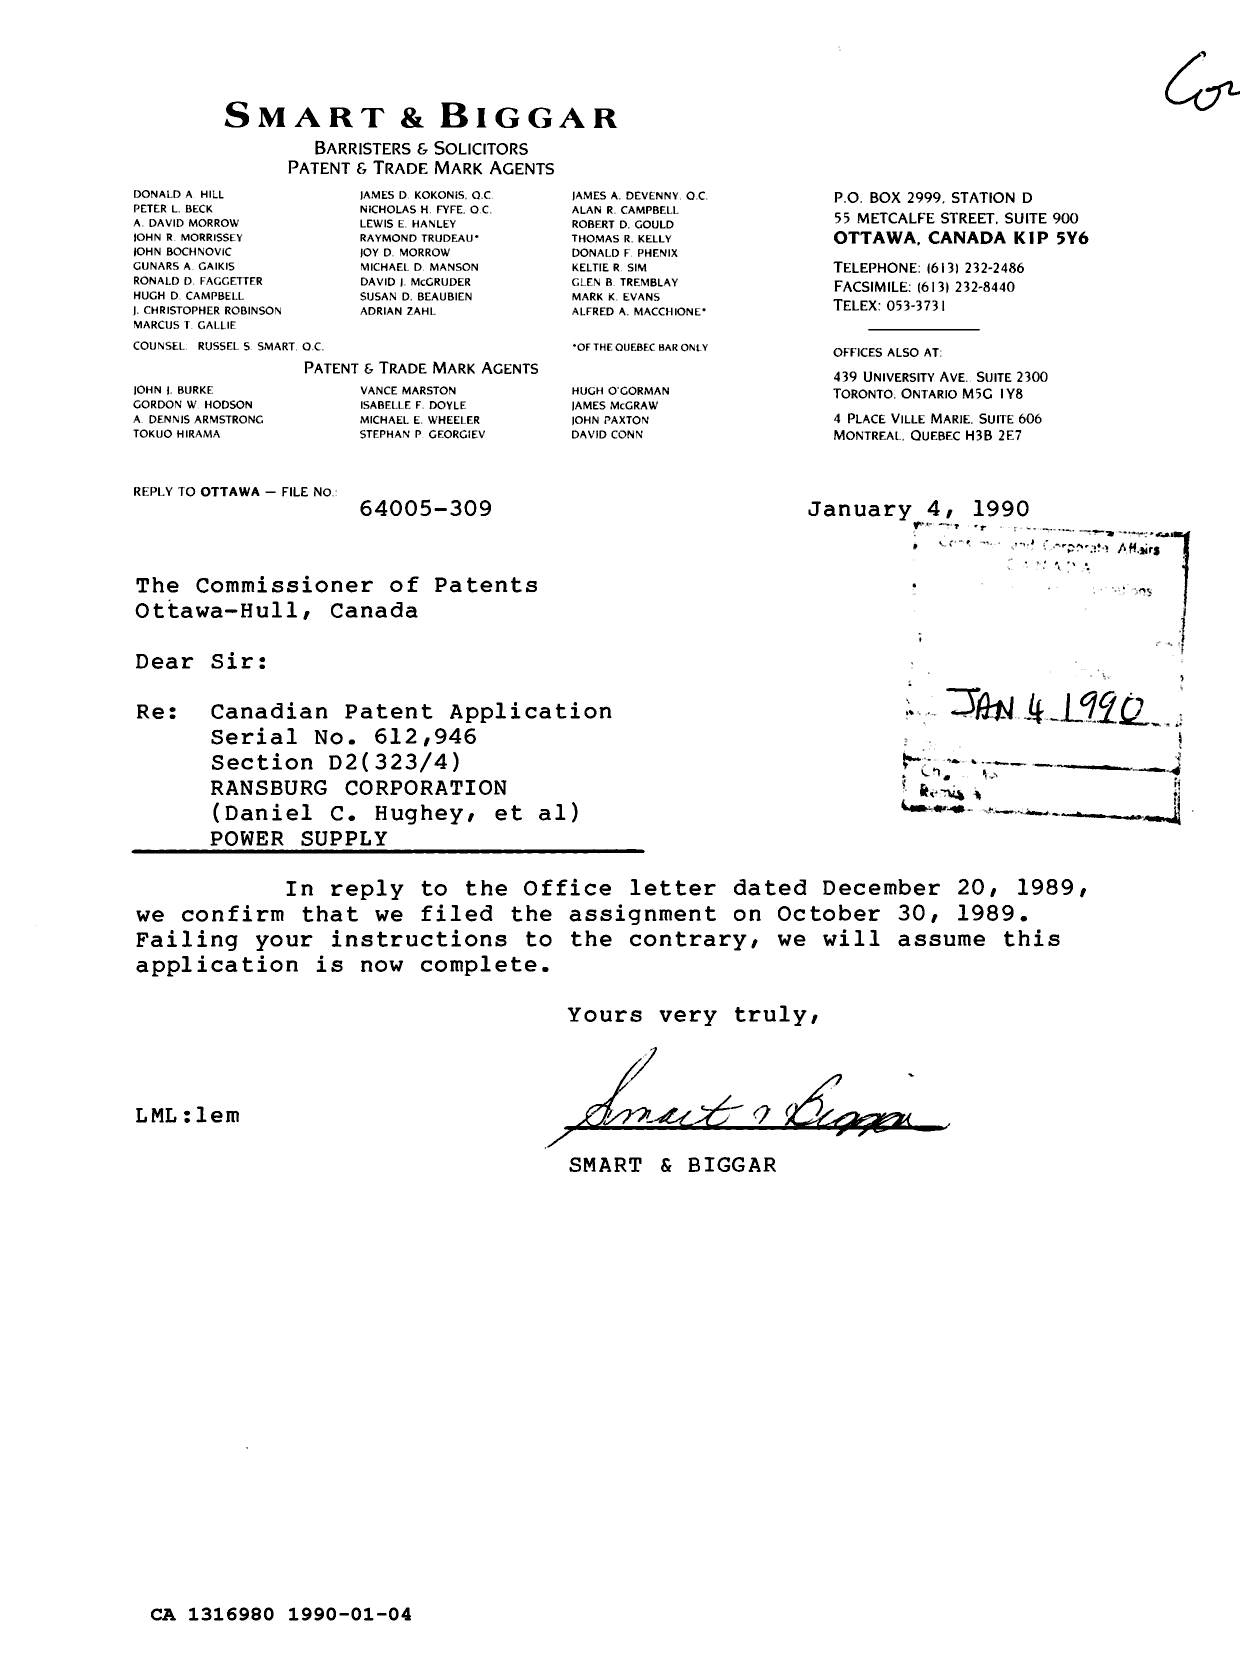 Document de brevet canadien 1316980. Correspondance reliée au PCT 19900104. Image 1 de 1